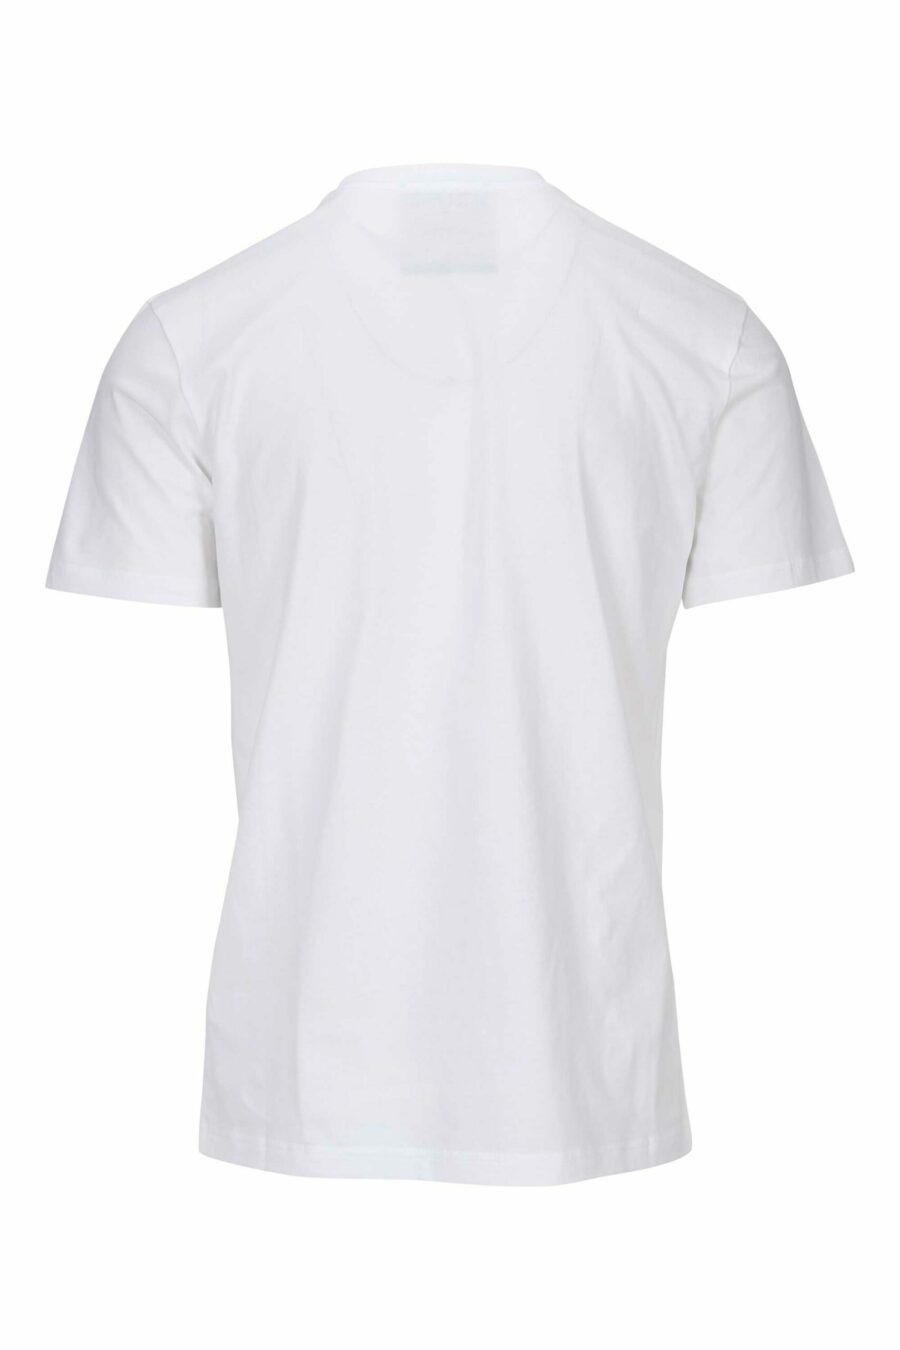 Camiseta blanca de algodón orgánico con maxilogo negro clásico - 667113391403 1 scaled